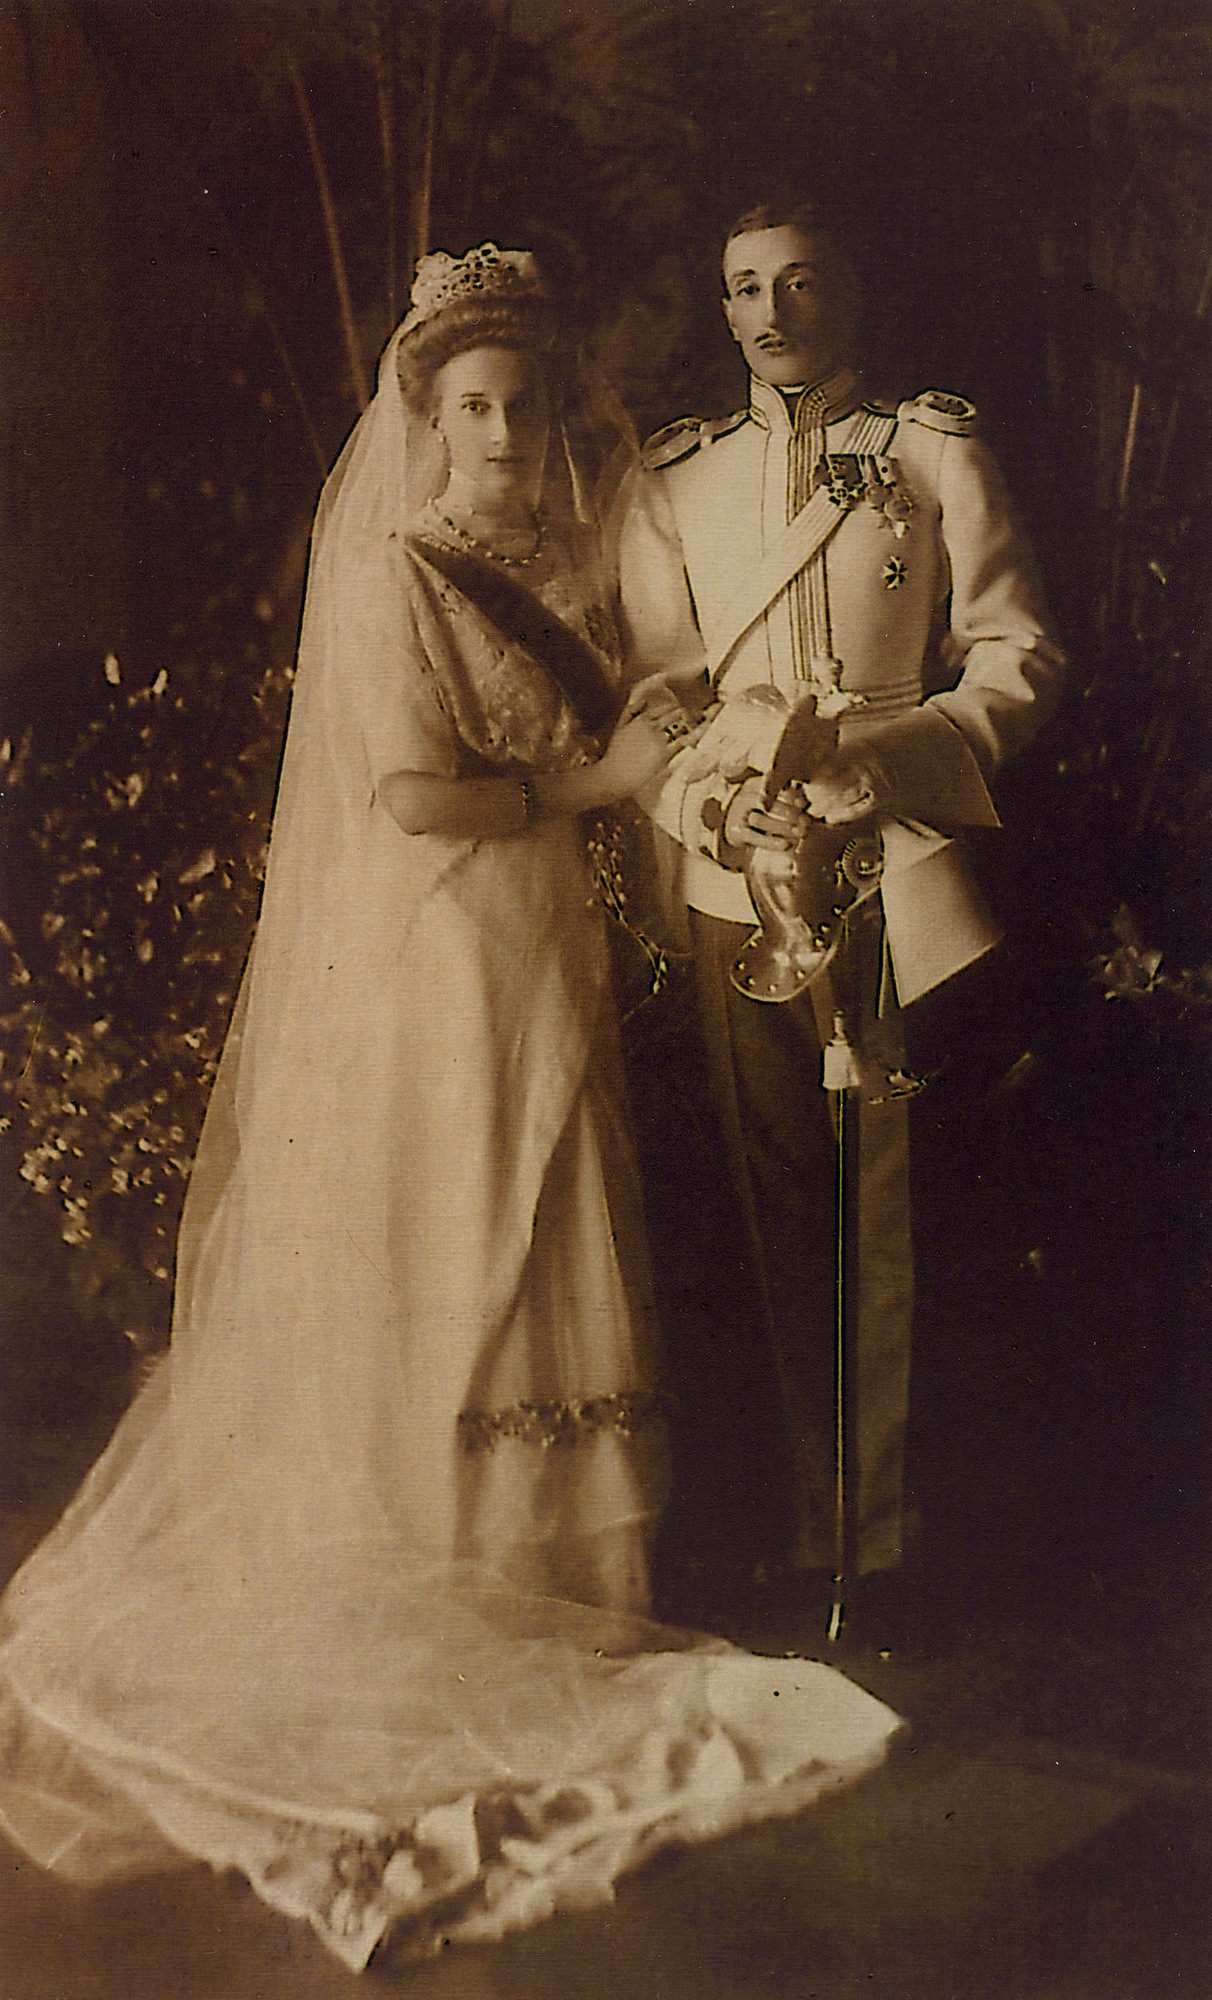 Ein Hochzeitsfoto des georgischen Prinzen Konstantine Bagration von Mukhrani und Prinzessin Tatjana Konstantinowna.
